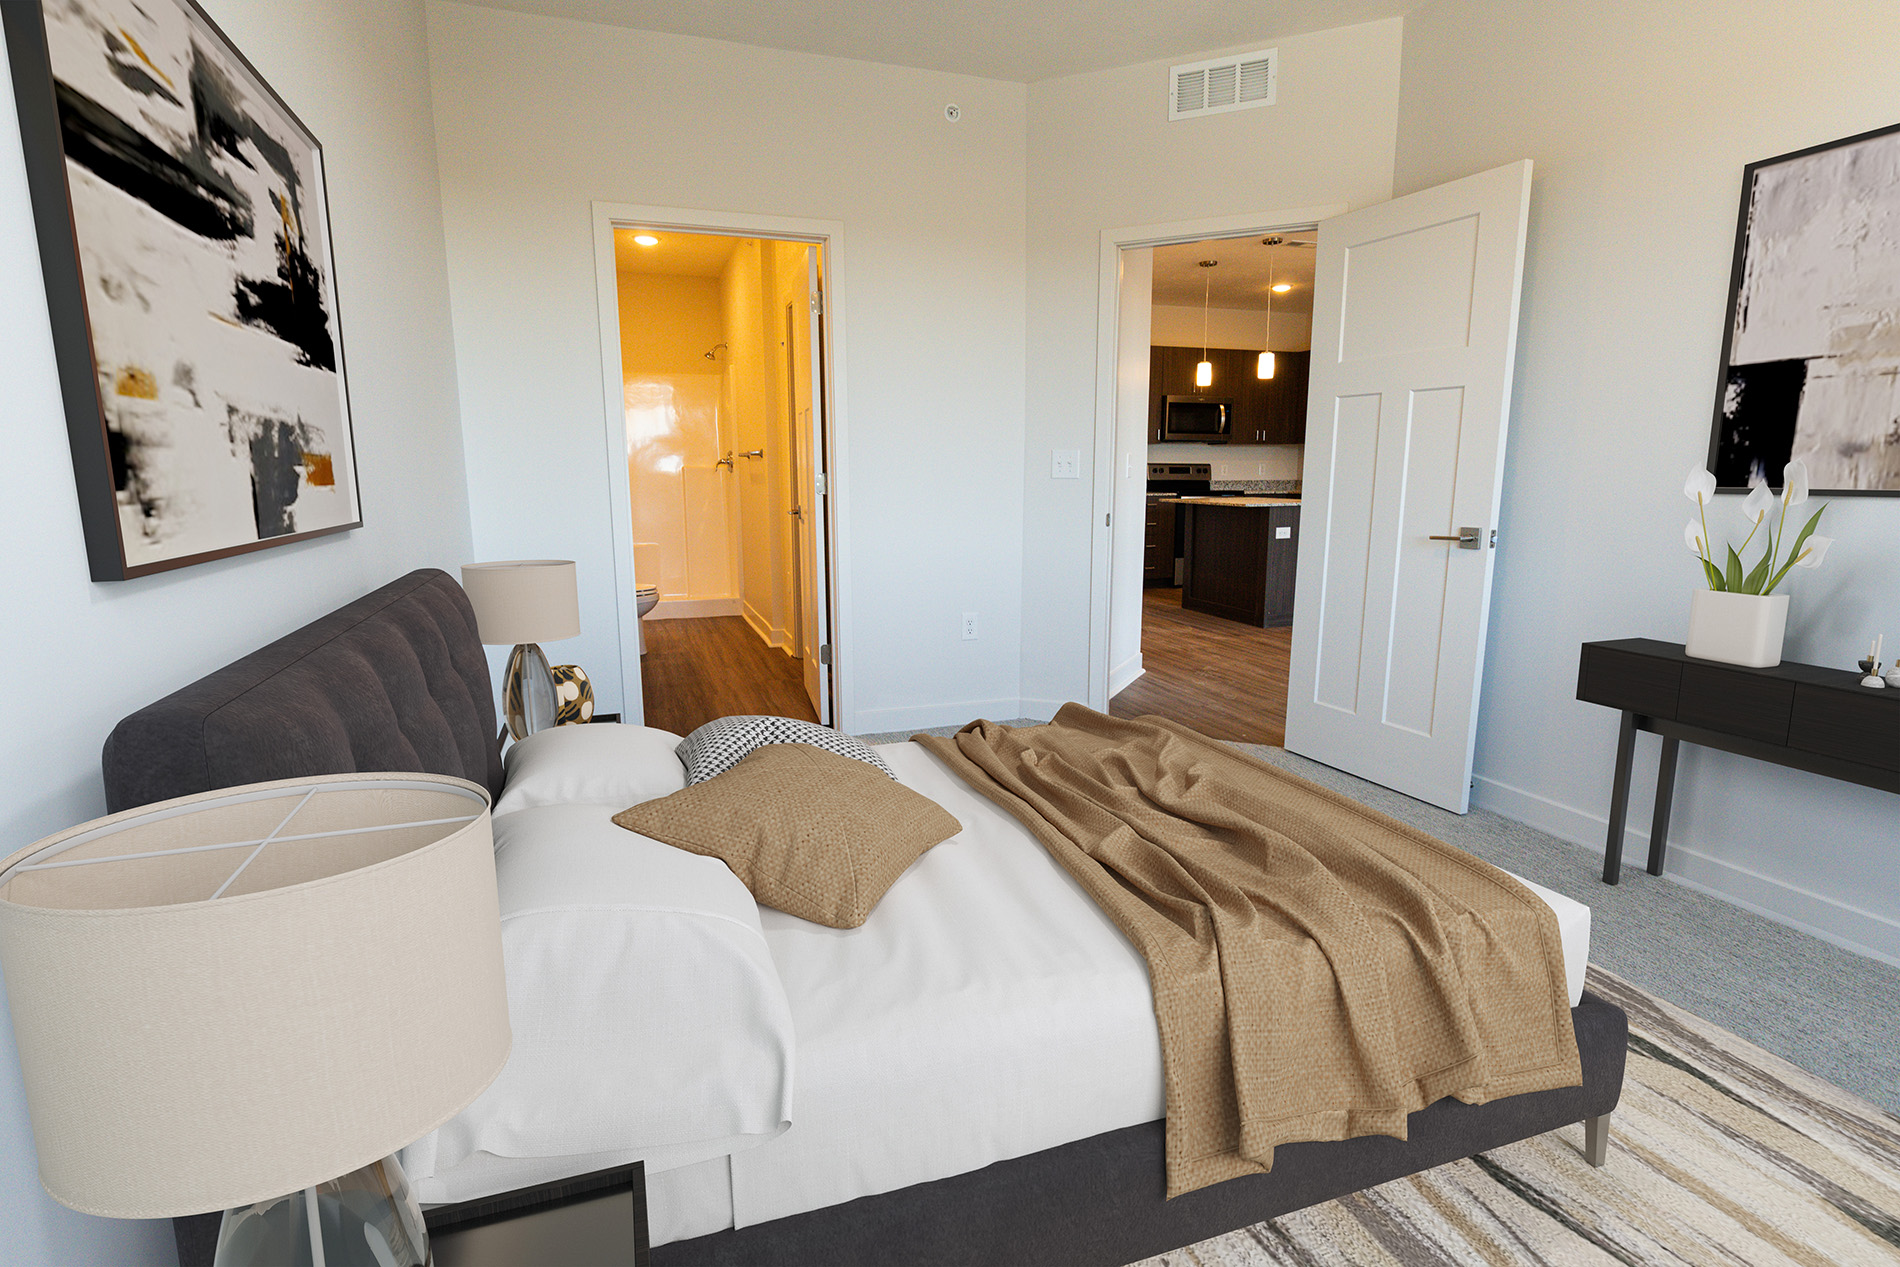 Main Bedroom Interior at EOS 75 Apartments in Bellevue Nebraska